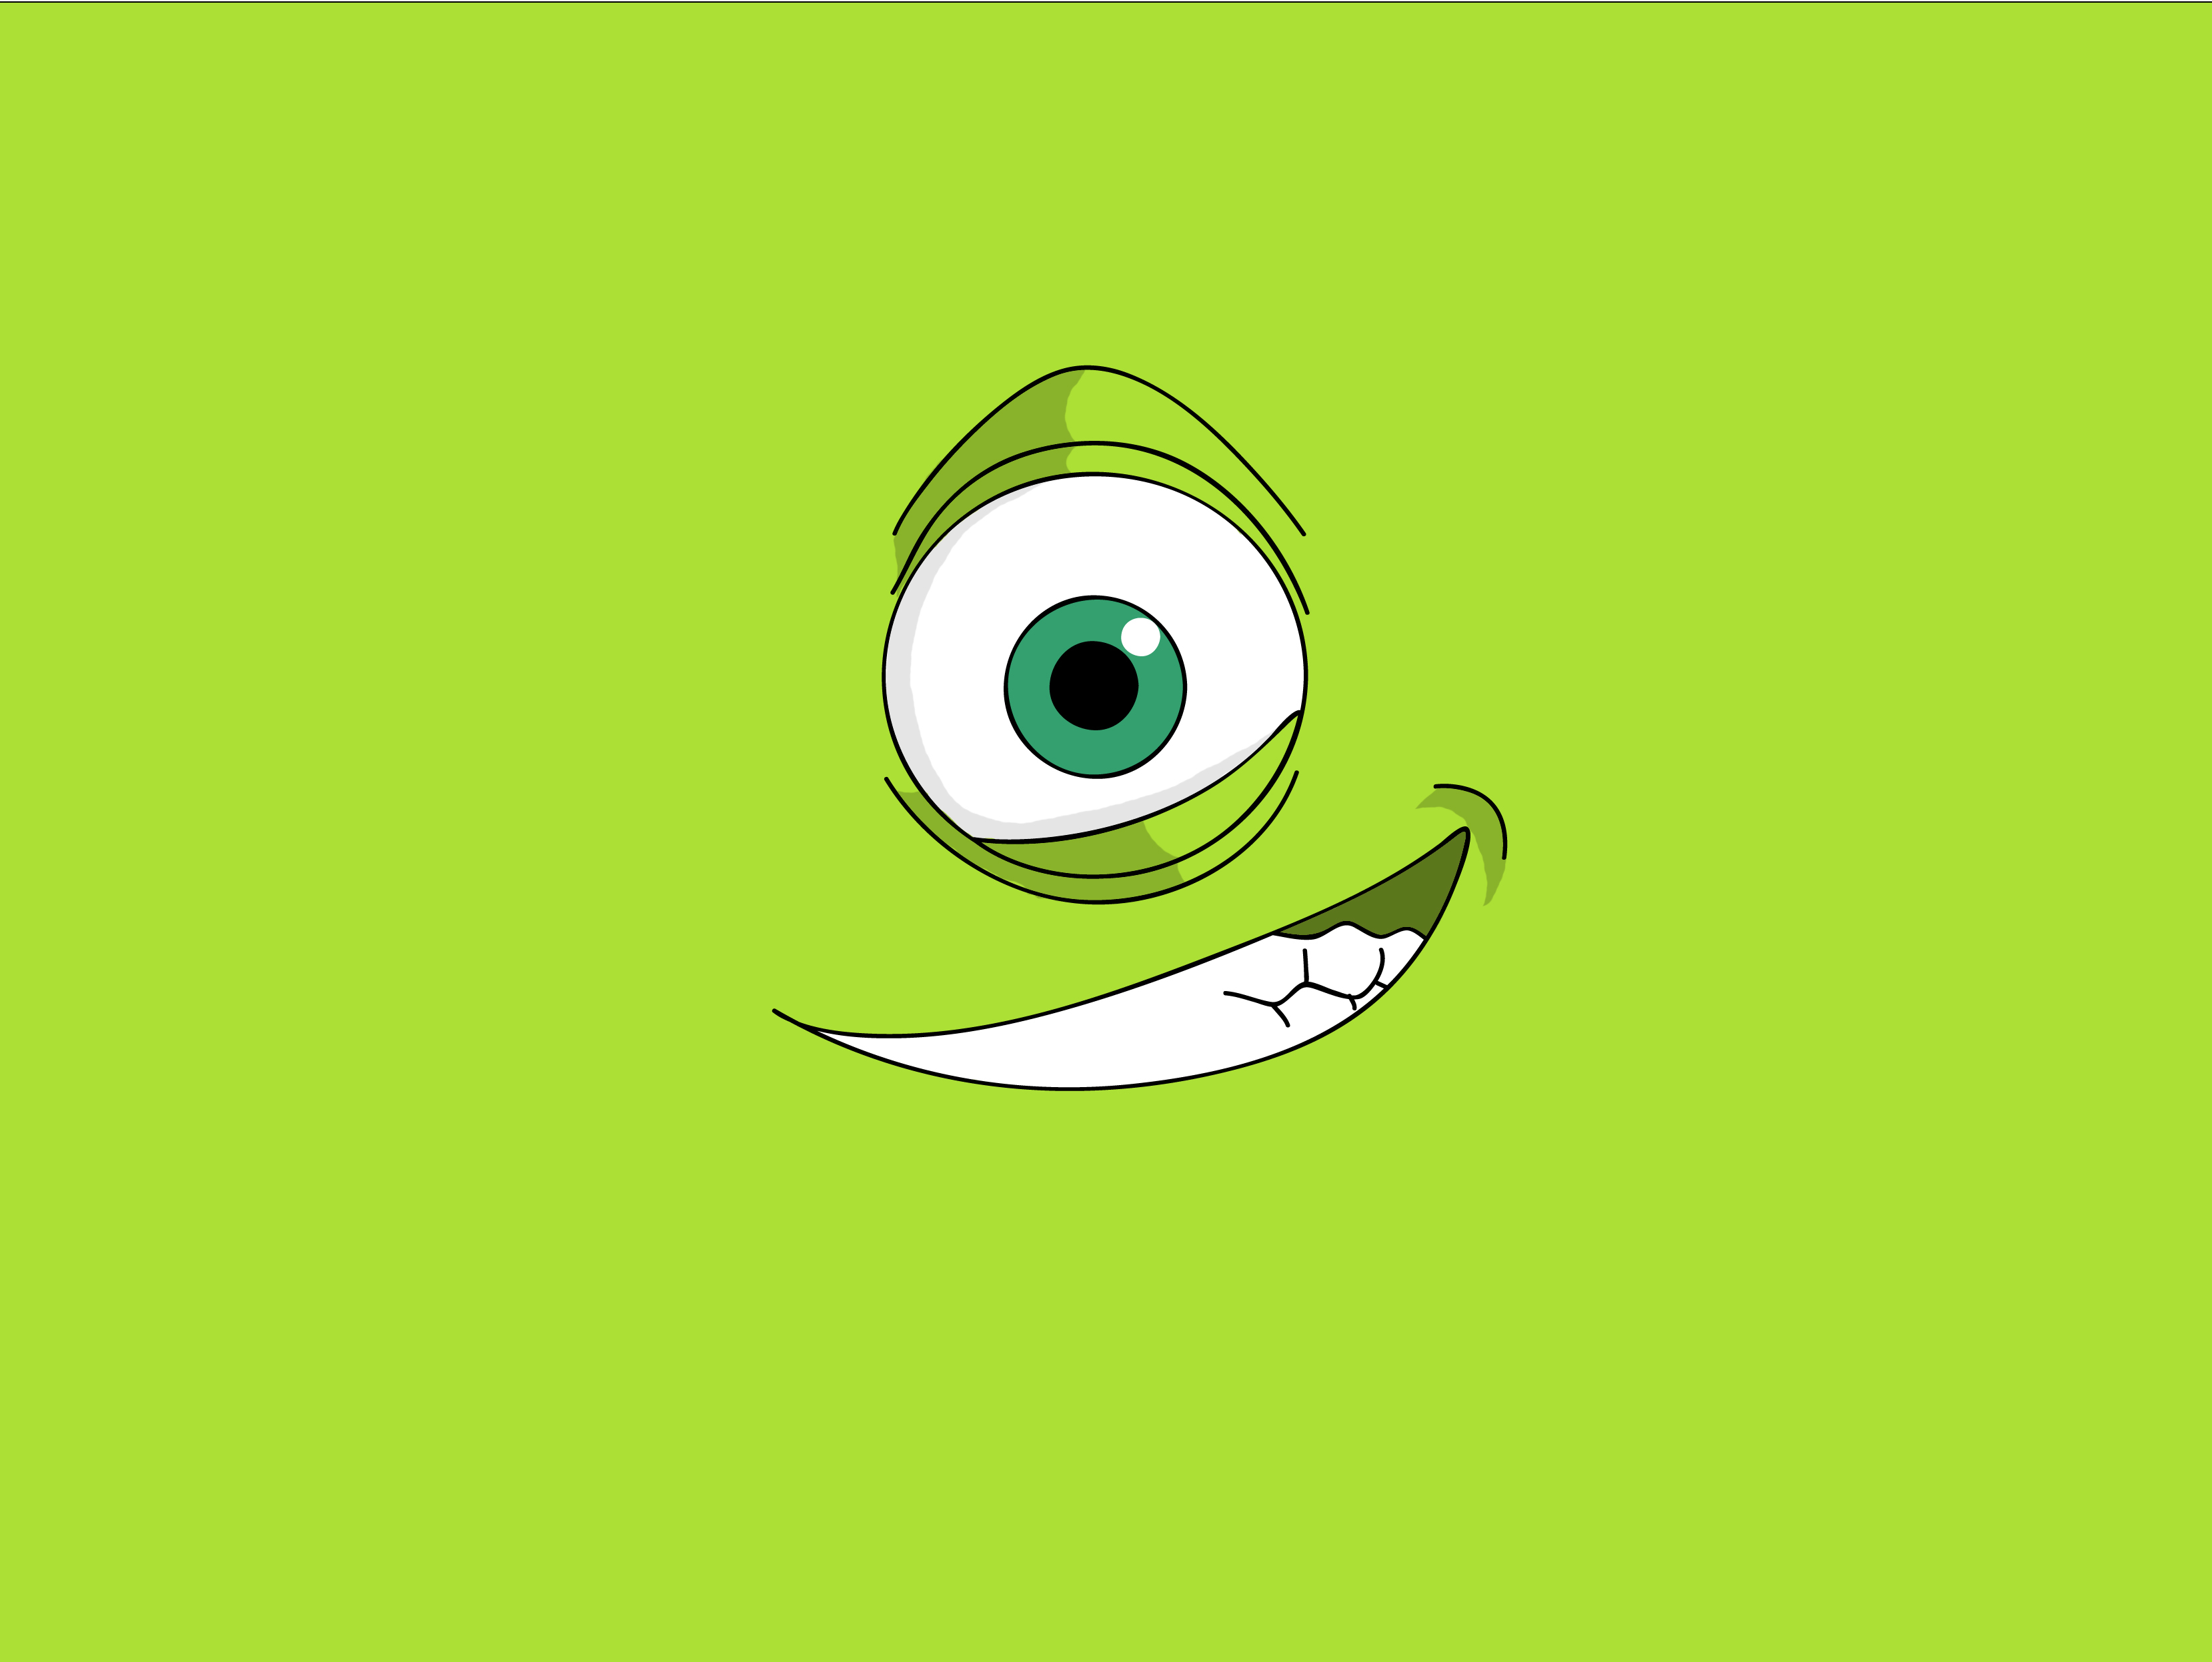 monstre inc fond d'écran hd,vert,dessin animé,œil,sourire,illustration